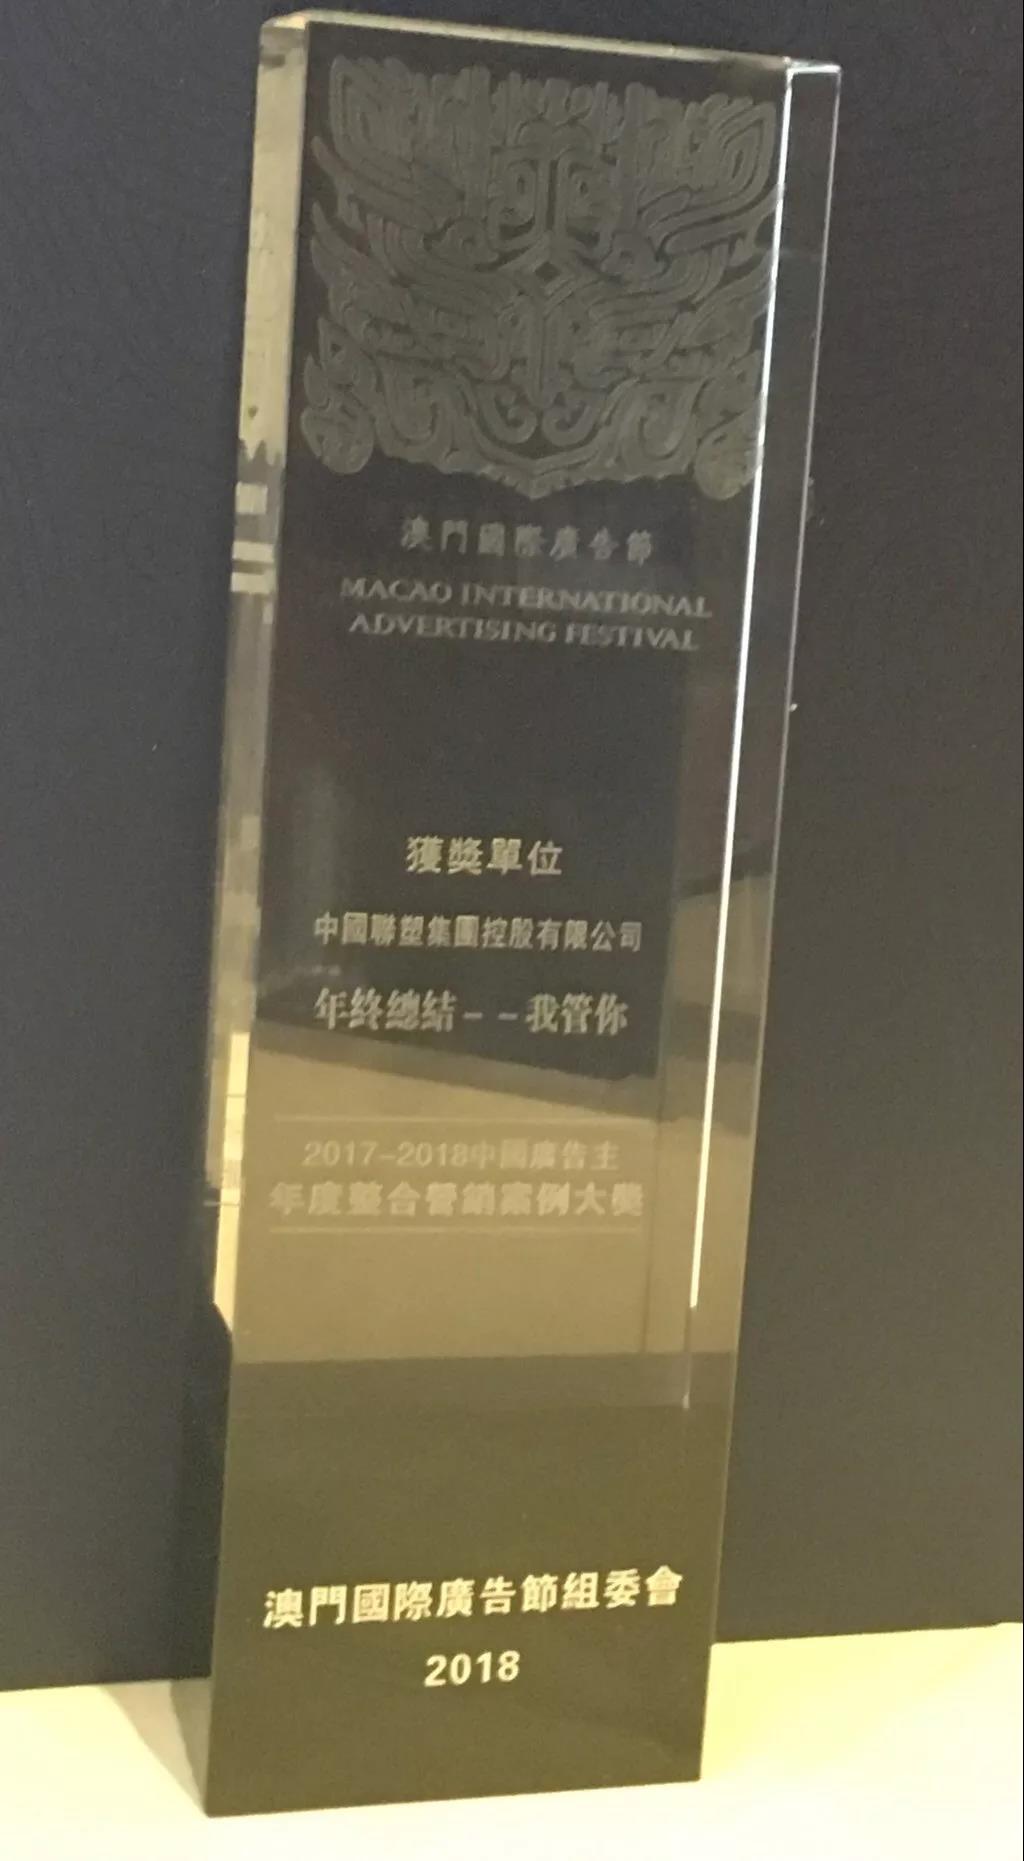 2017-2018中国广告主年度整合营销案例大奖